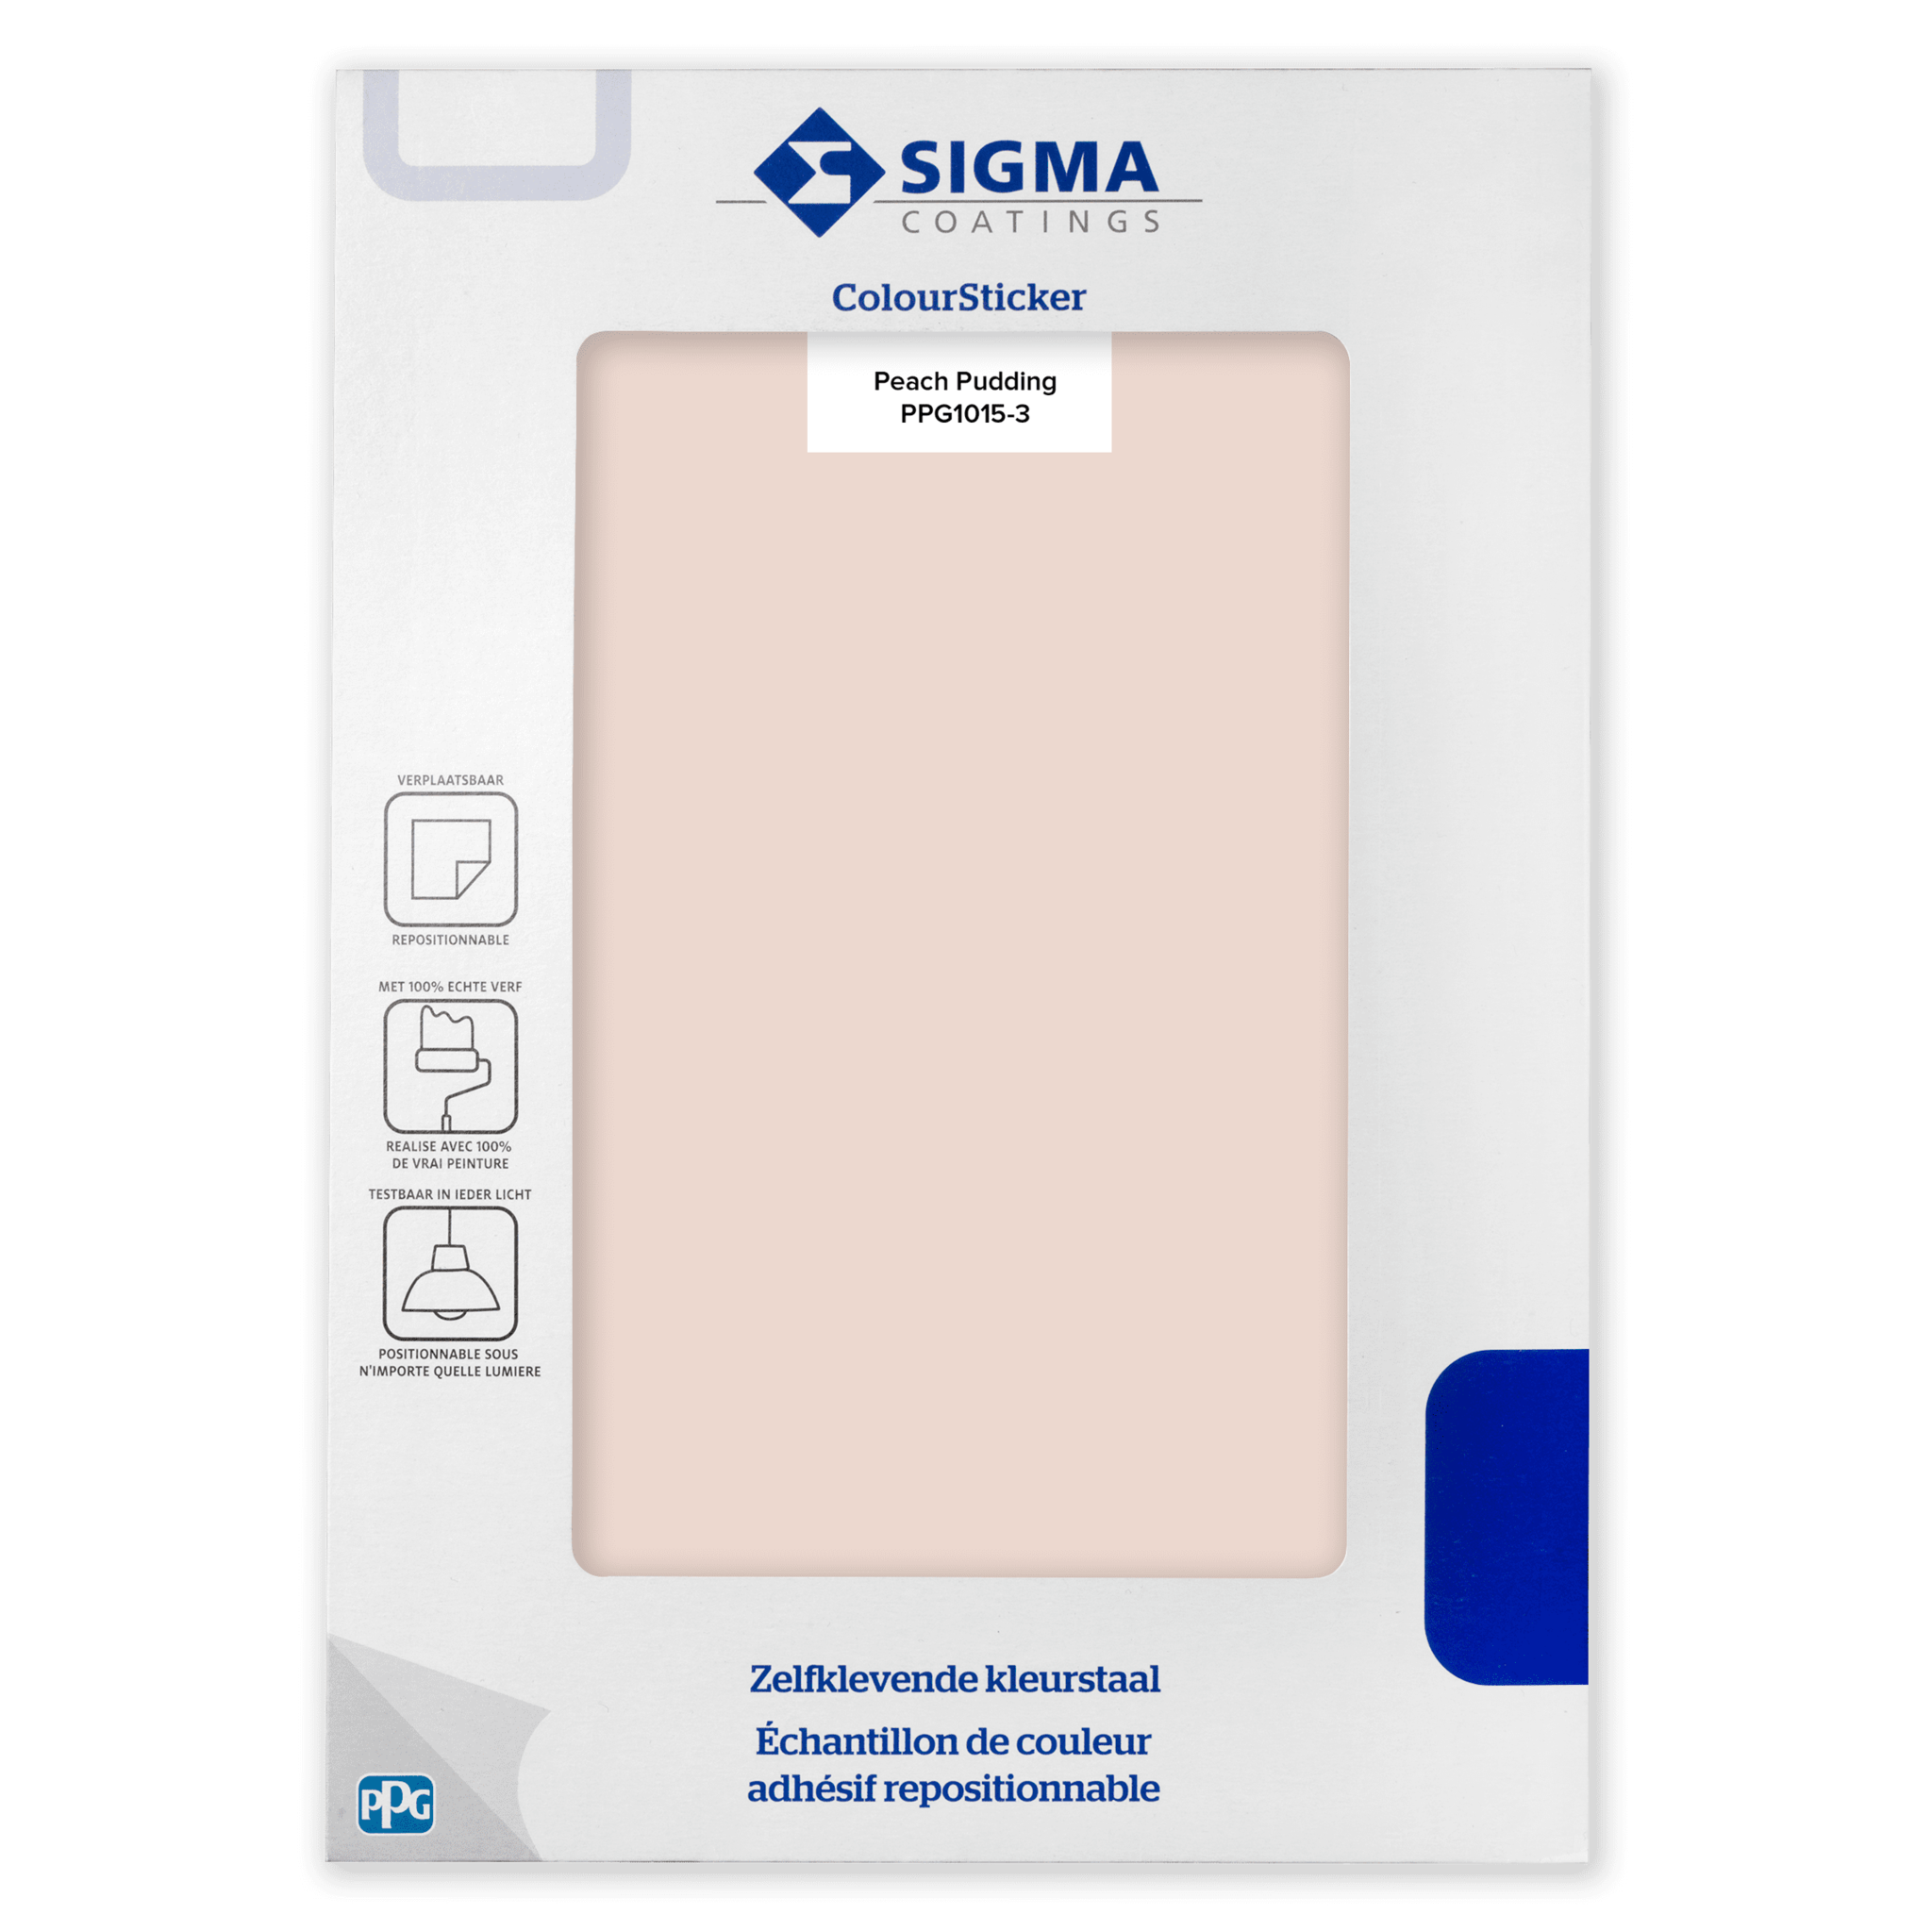 Sigma ColourSticker - Peach Pudding 1015-3